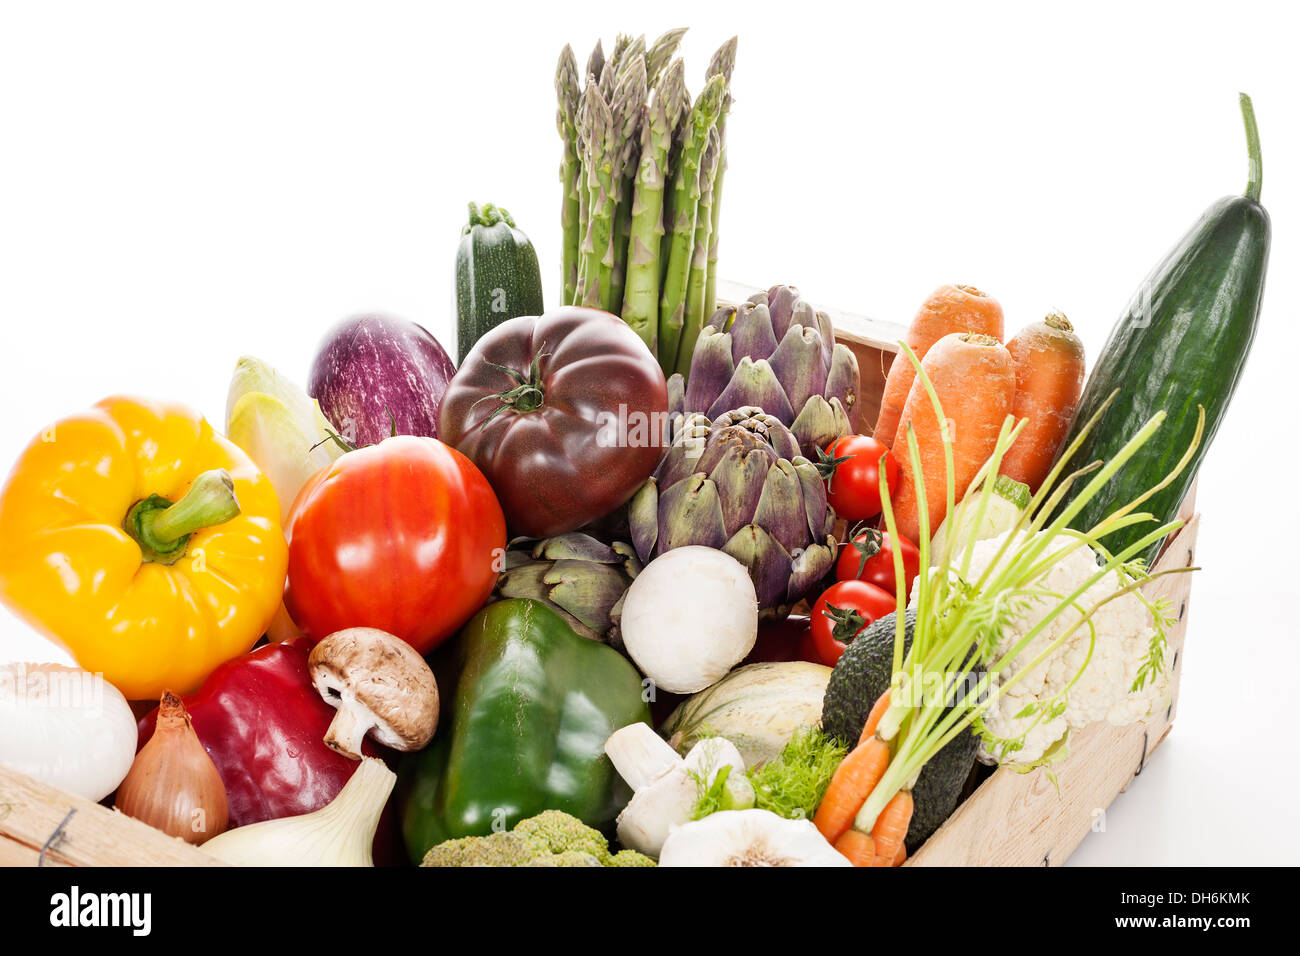 Caisse de légumes frais bruts de la farmers market Banque D'Images